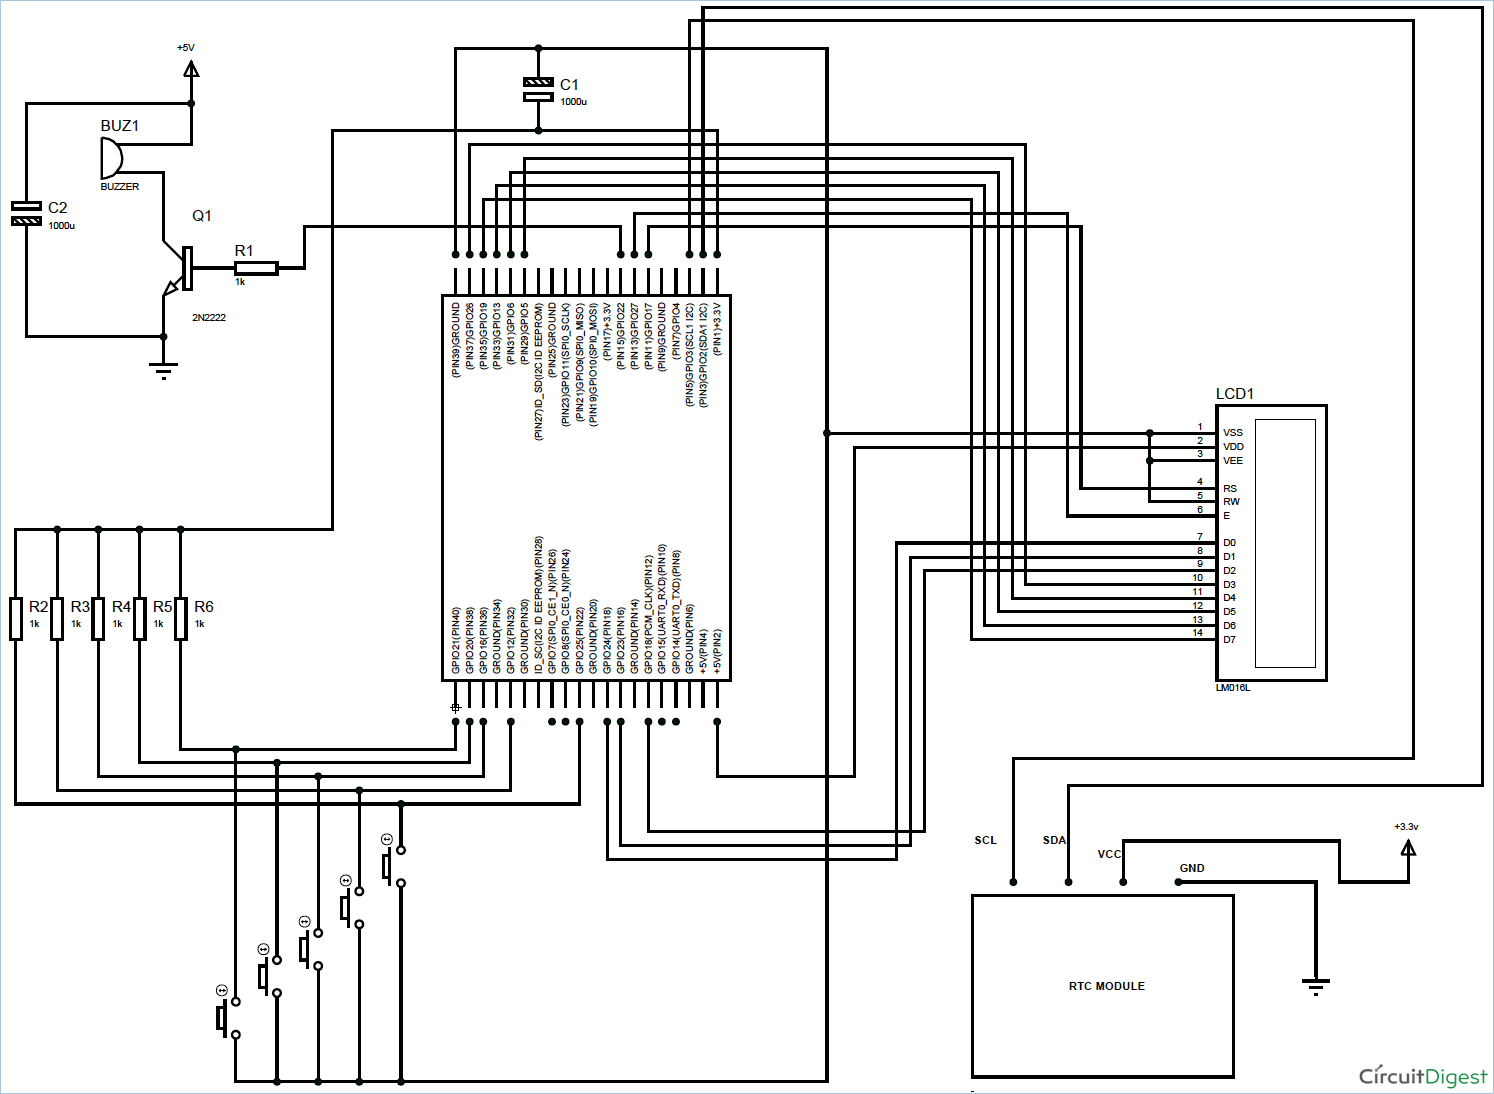 Raspberry-pi-alarm-clock-using-RTC-module-circuit-diagram